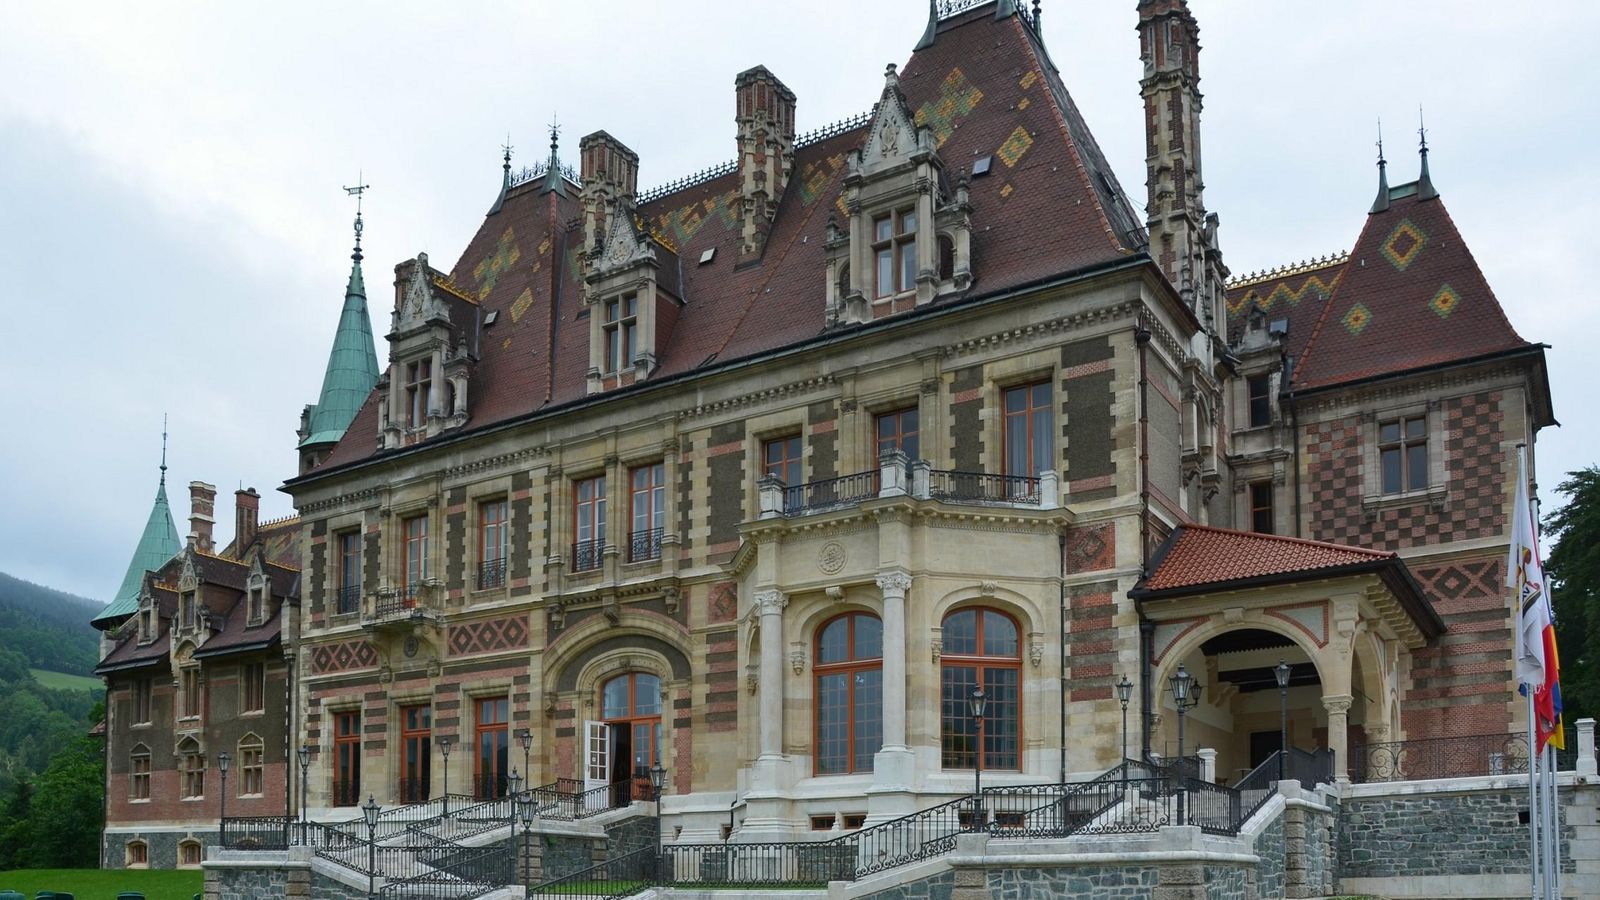 Foto: Schloss Hinterleiten, uno de los muchos palacios construidos por la familia Rothschild. (A. Wintschalek)